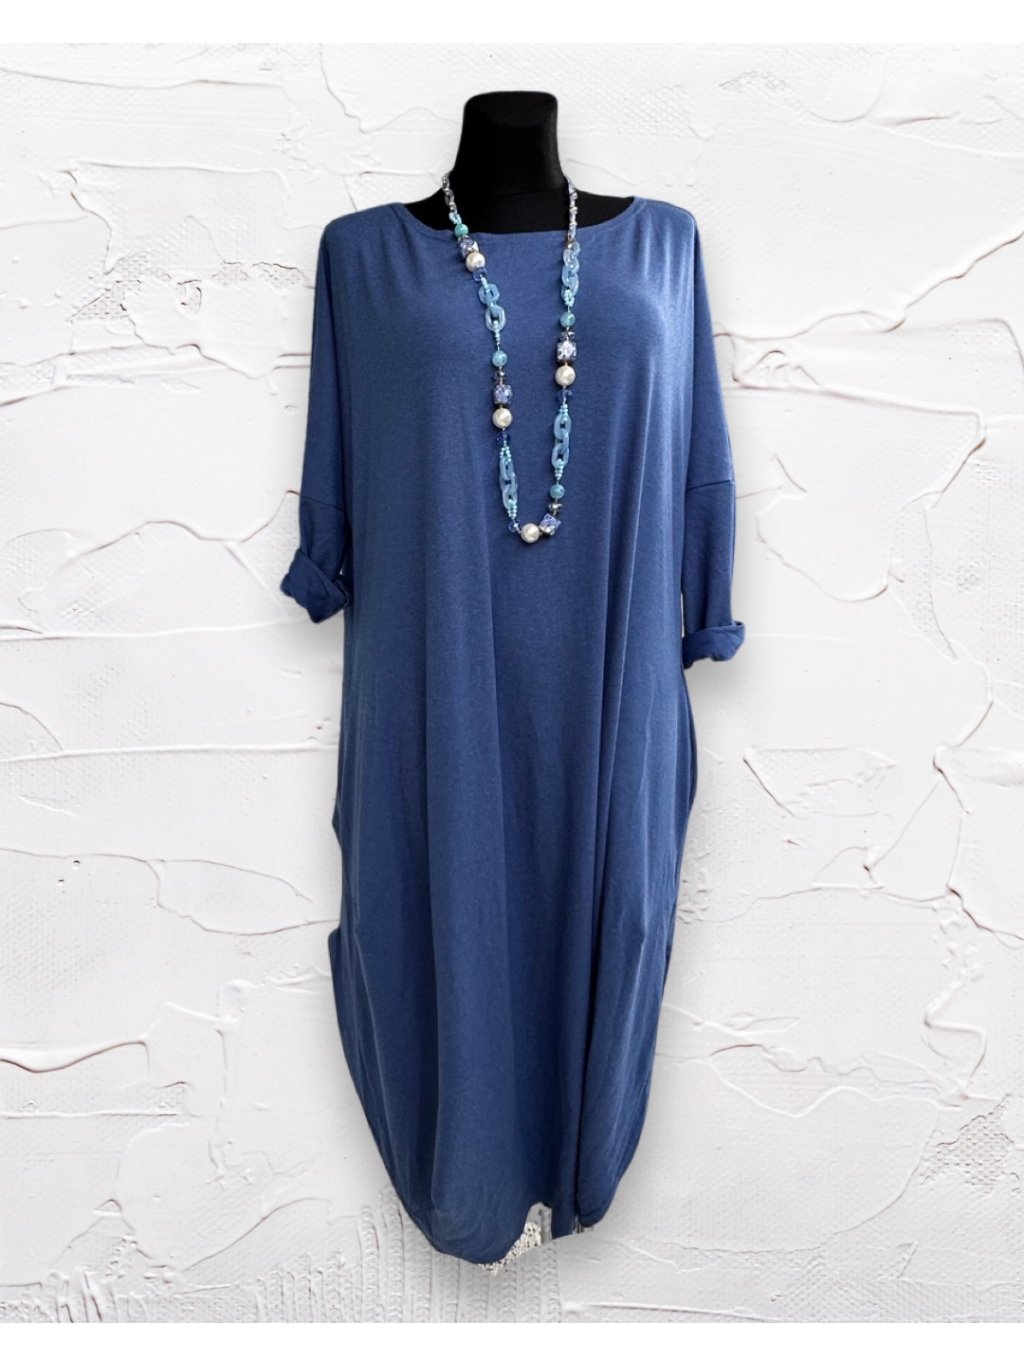 Taffi Jajko šaty dlouhé angora - modrá